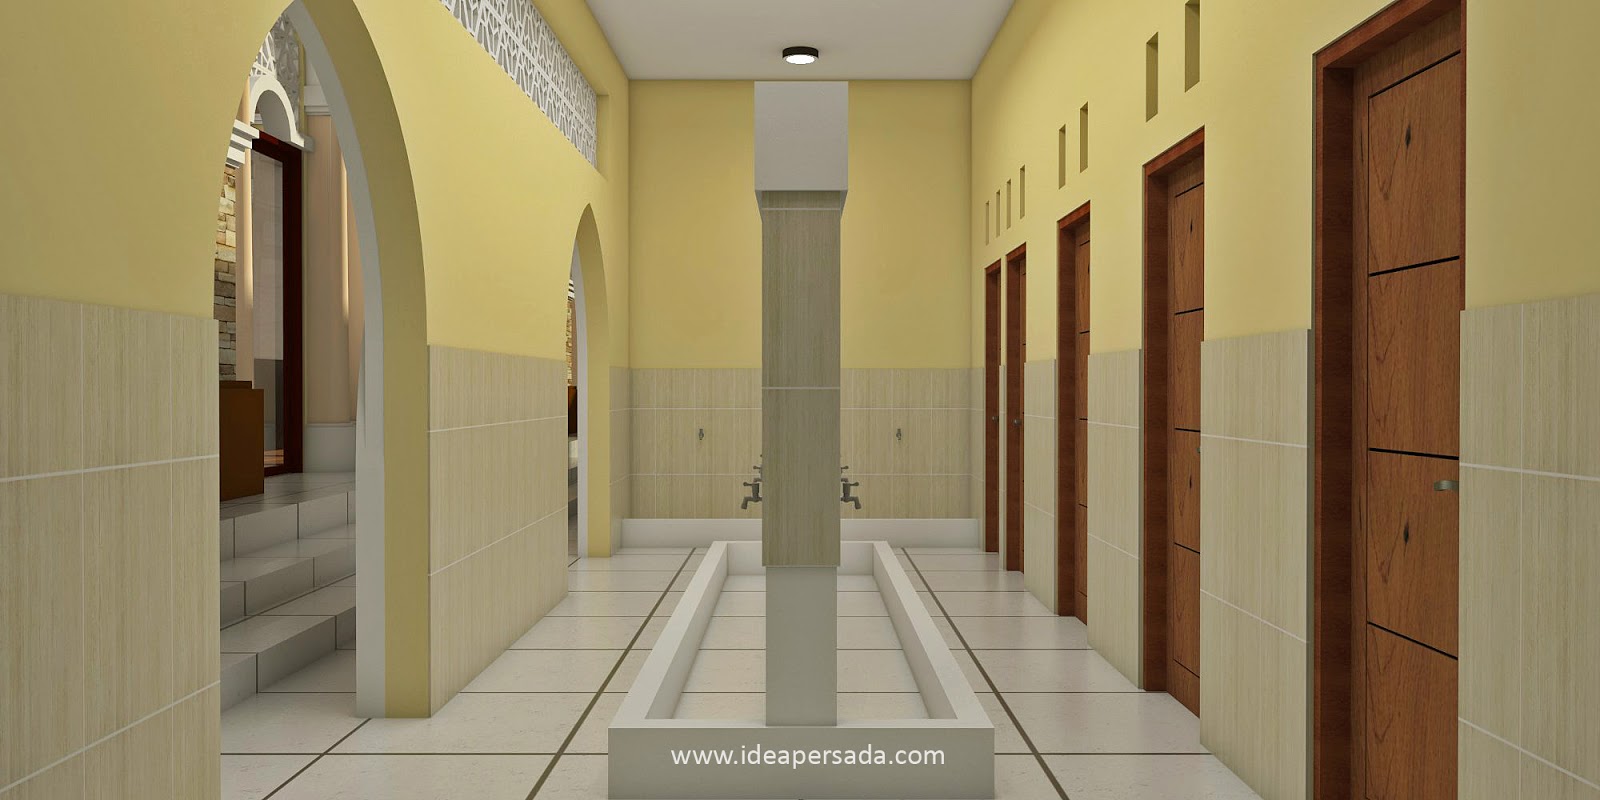  Gambar  Tempat  Wudhu  Masjid Minimalis  Model Rumah 2019